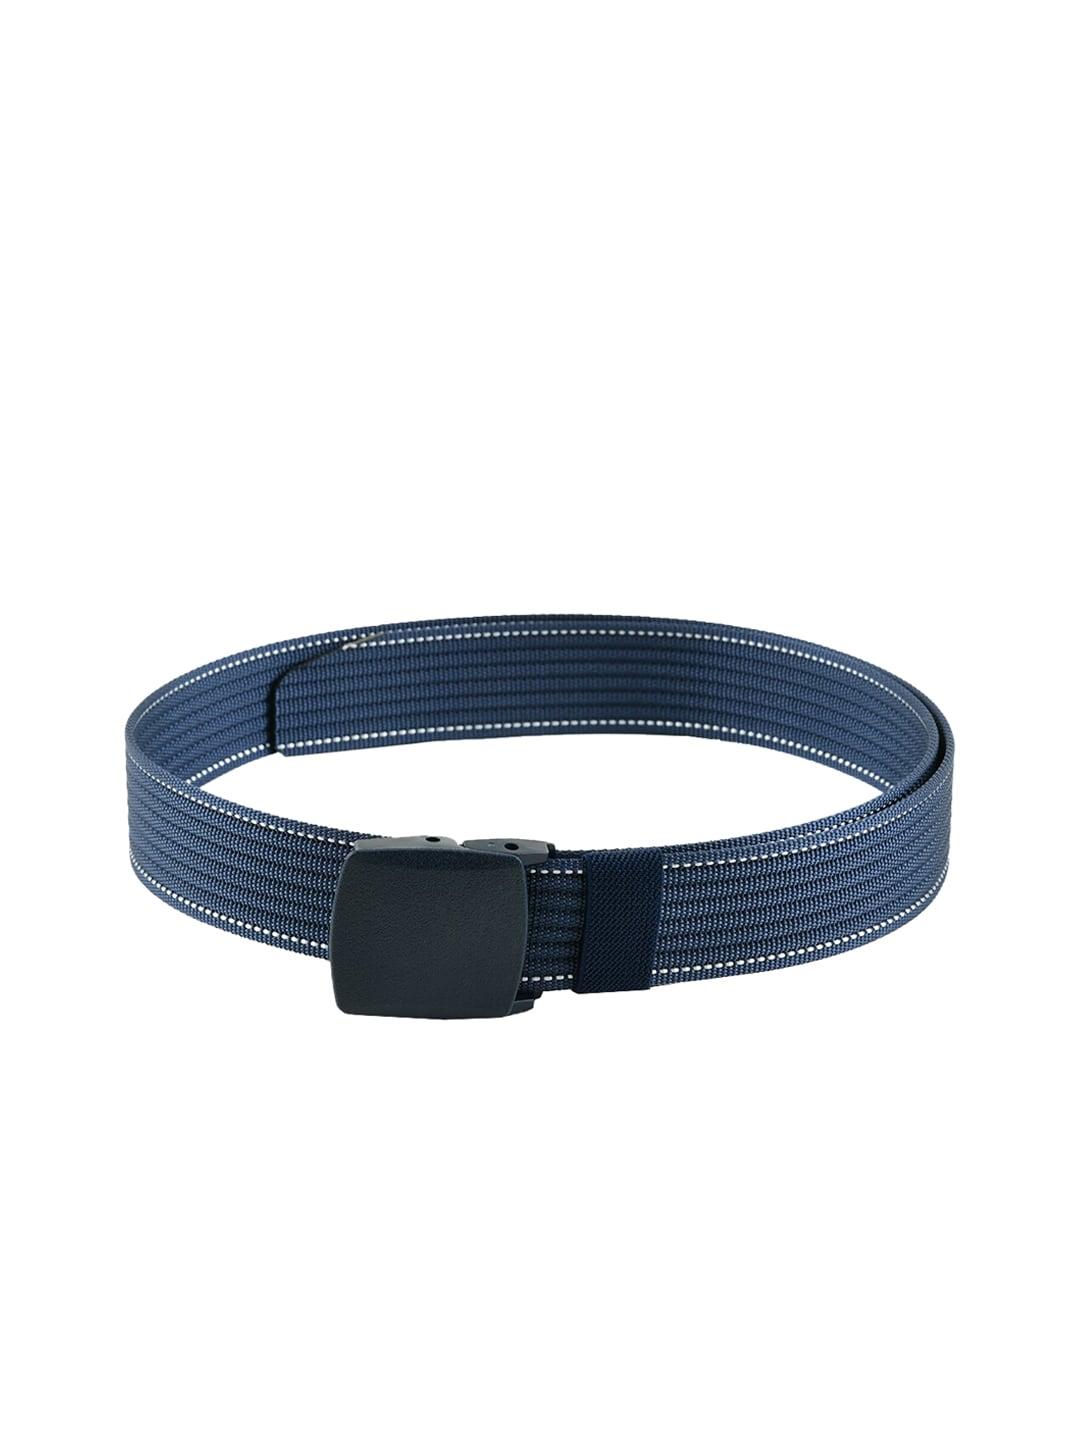 winsome-deal-men-blue-woven-design-belt